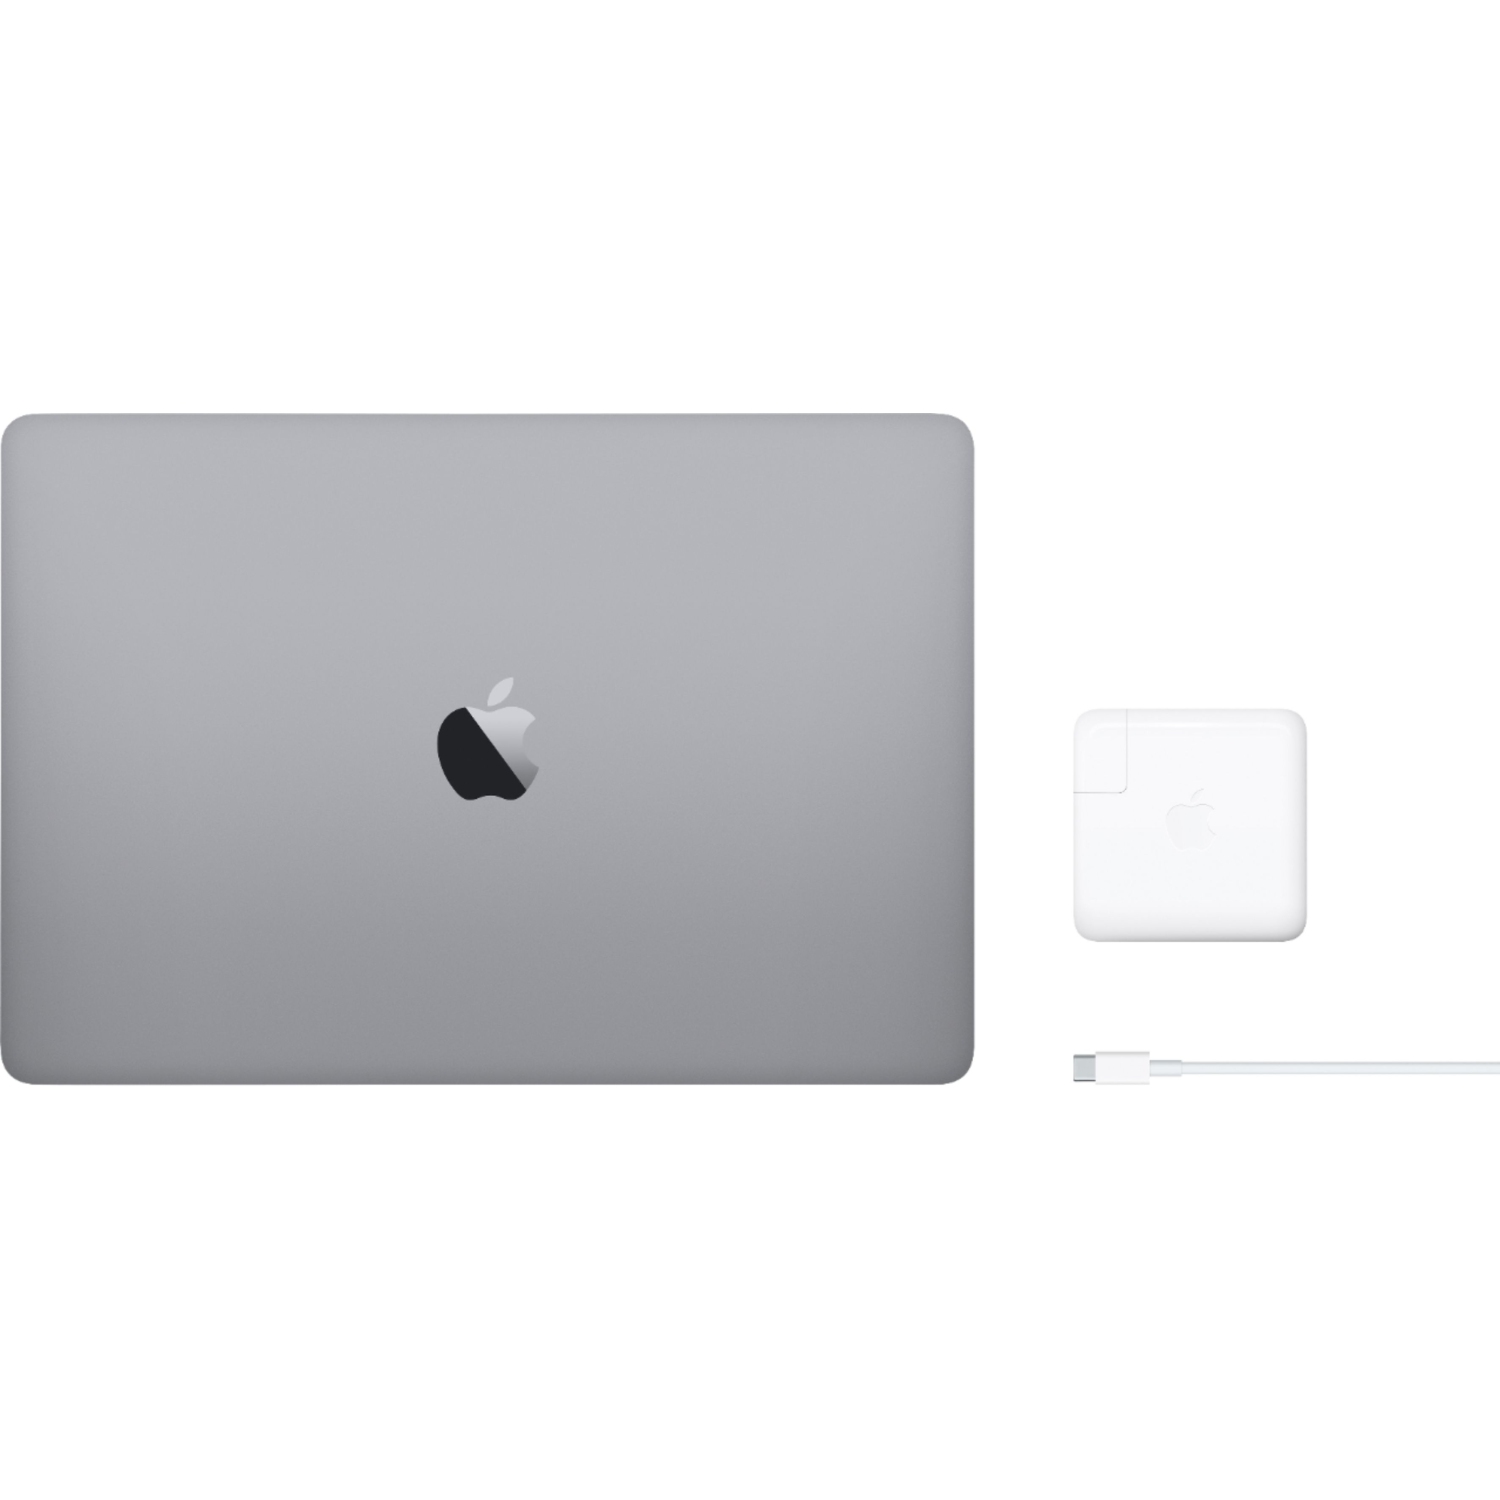 Refurbished (Excellent) - Apple Macbook Pro 13.3